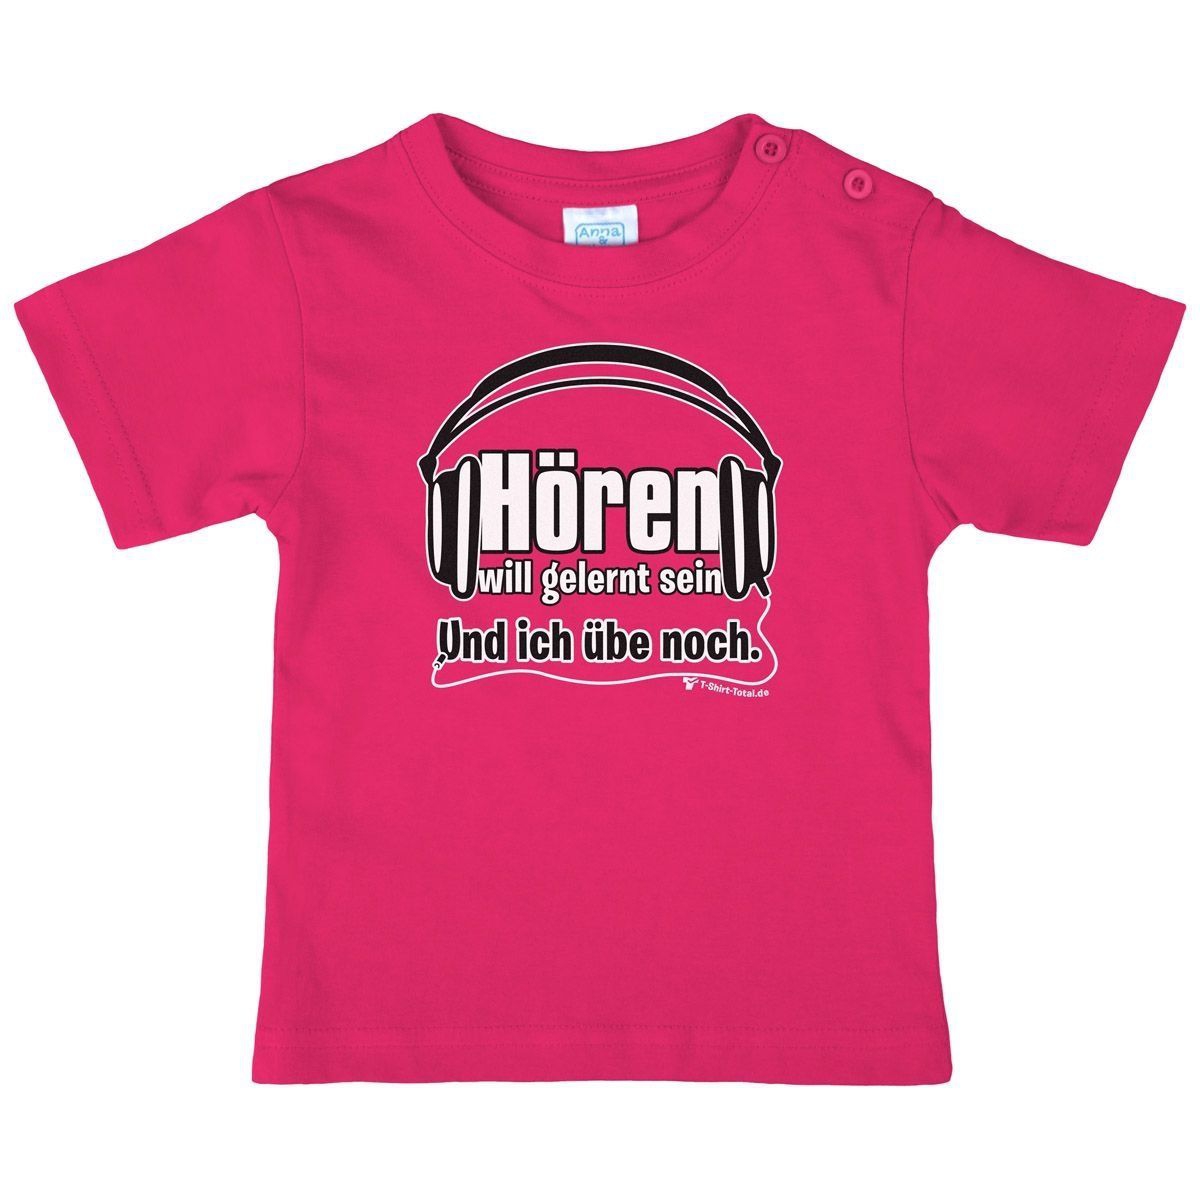 Hören will gelernt sein Kinder T-Shirt pink 104